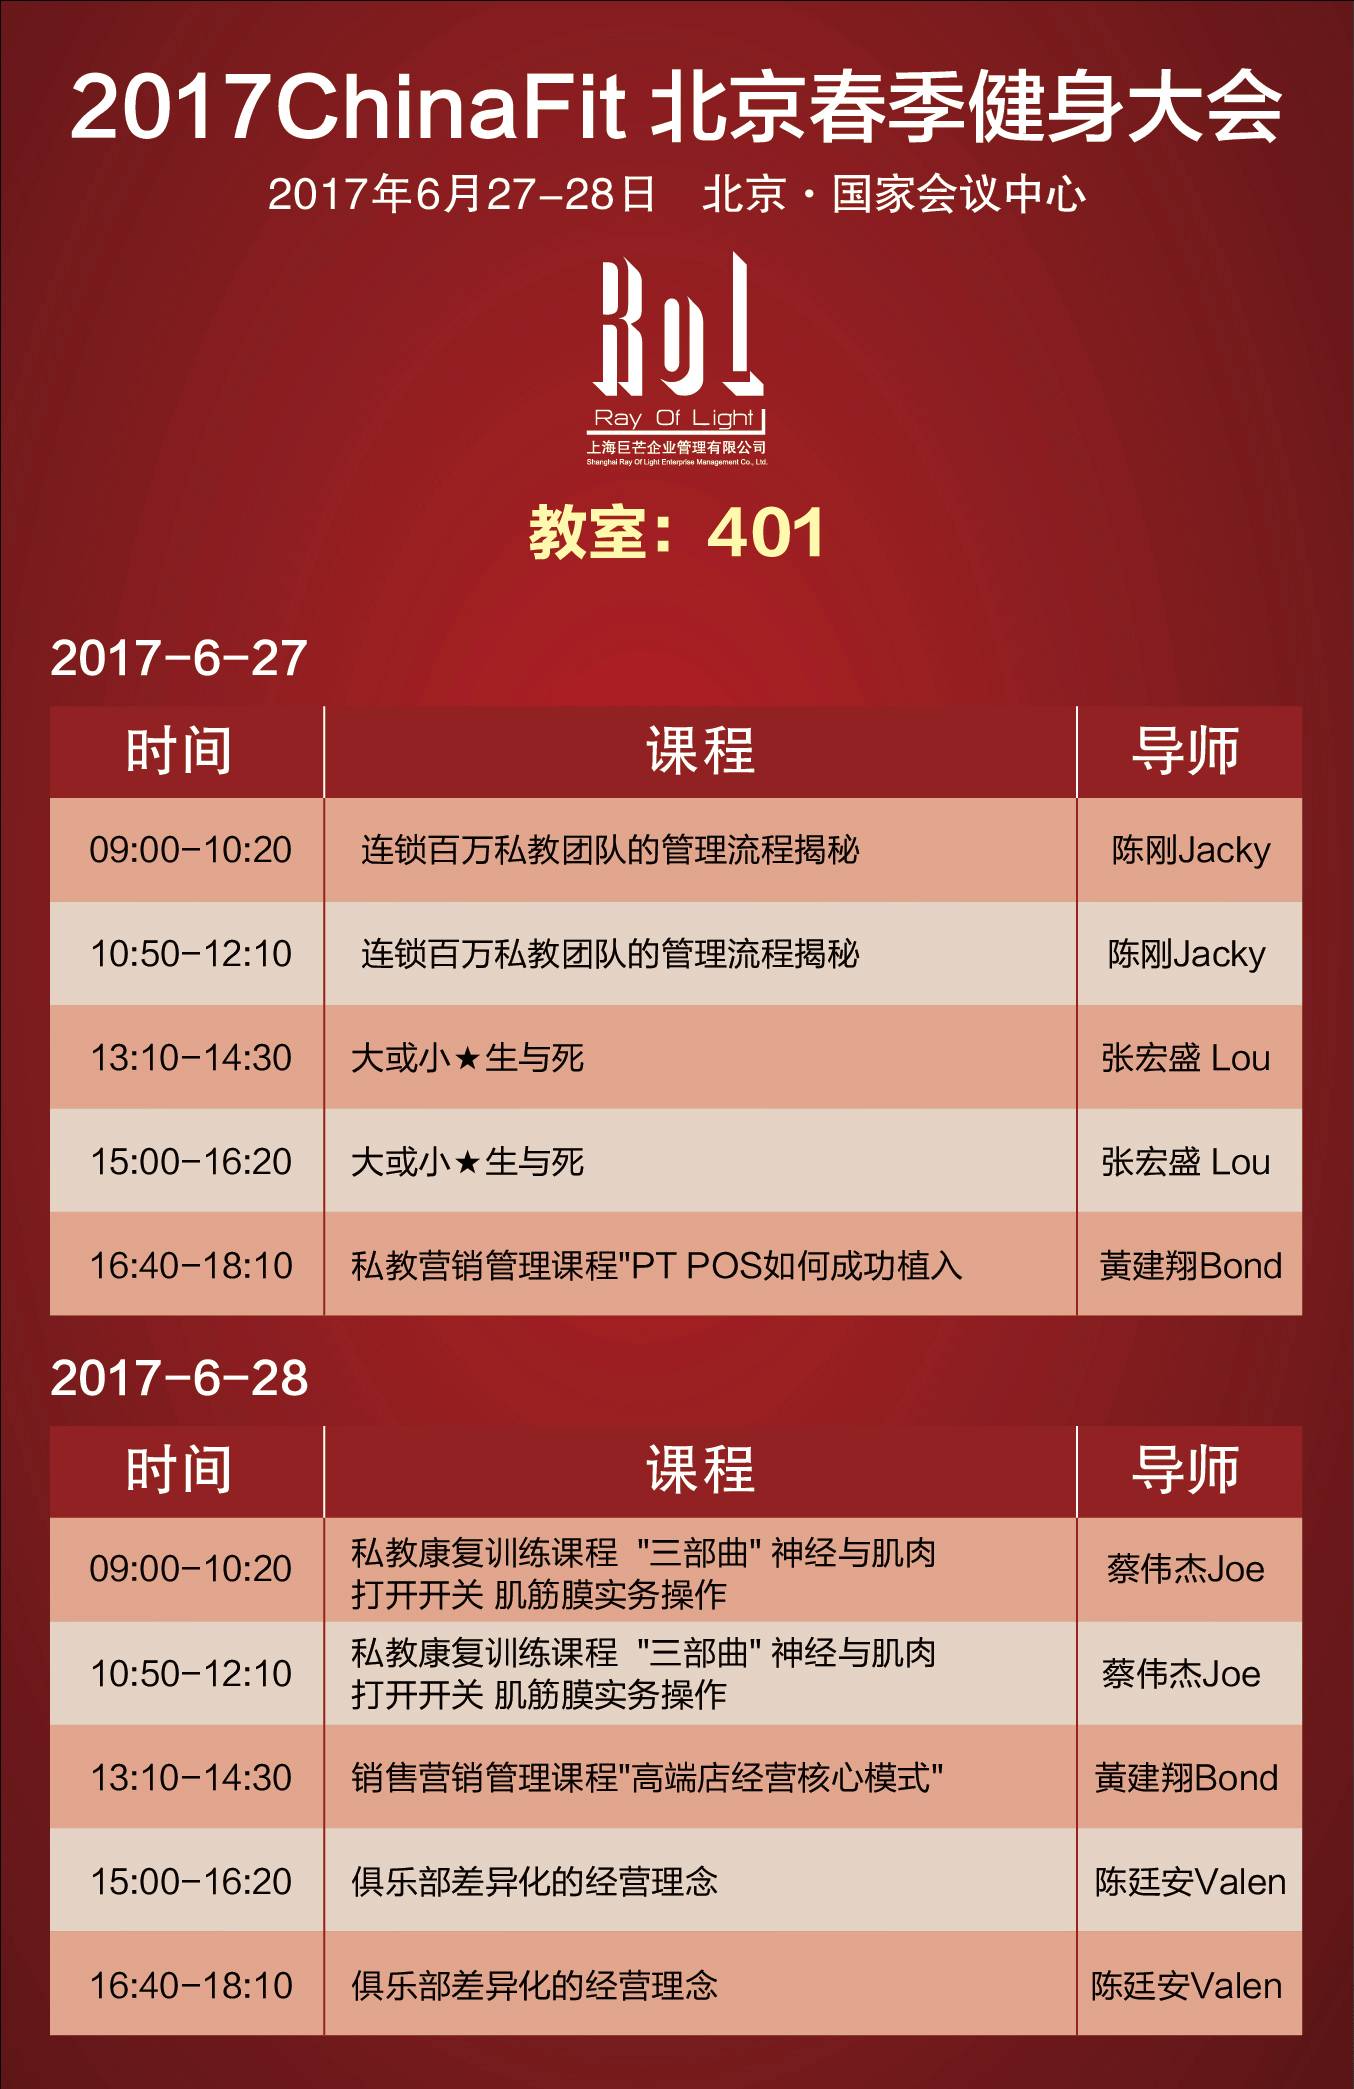 2017ChinaFit北京春季健身大会